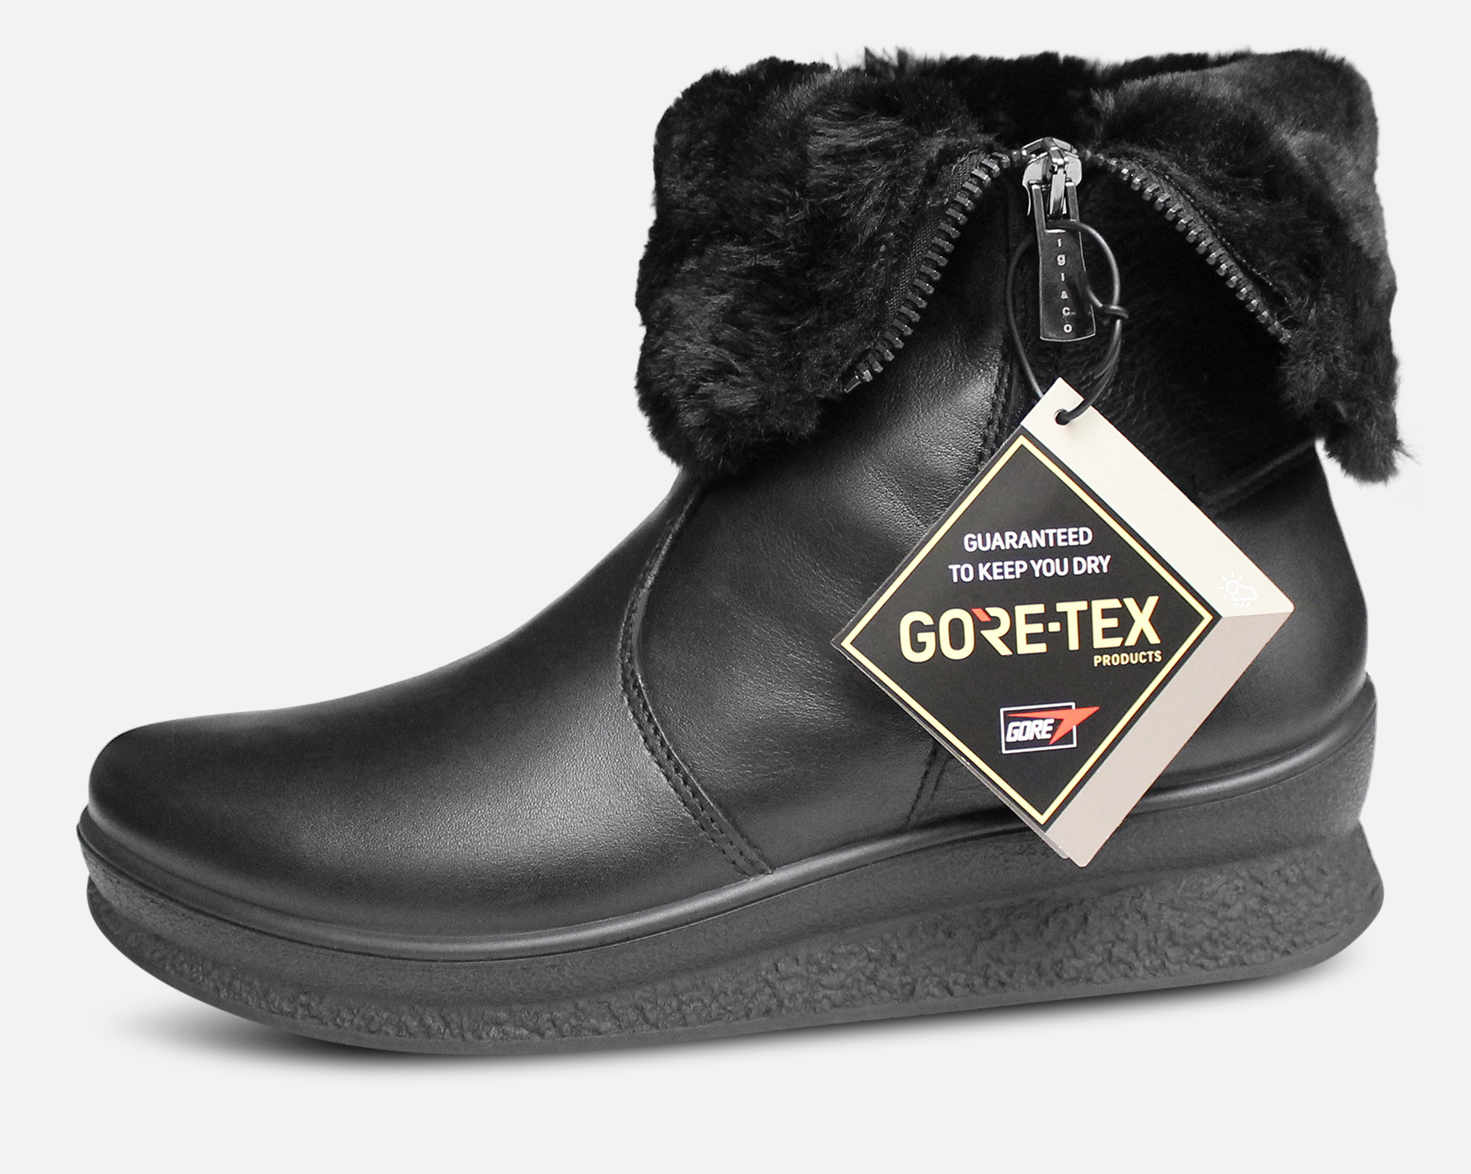 Gore Tex Winter Boots Womens Flash Sales | bellvalefarms.com